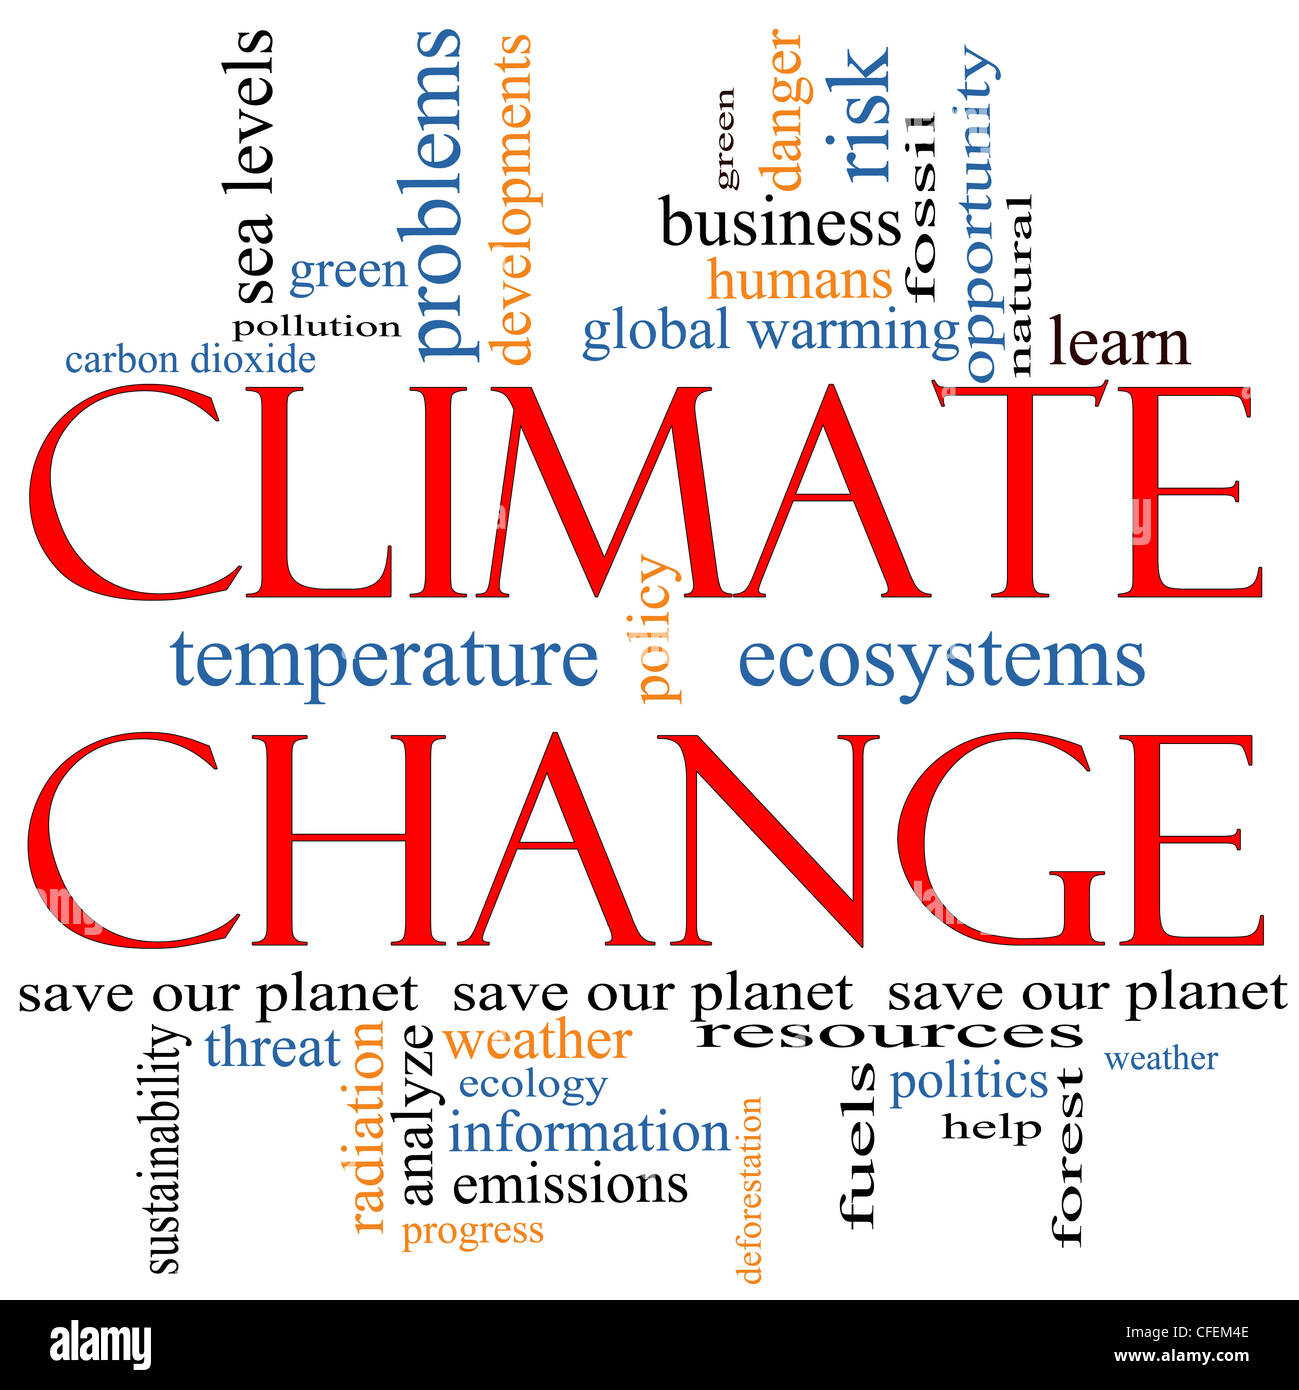 Eine Klimawandel Word Cloud-Konzept mit Begriffen wie Planeten zu retten, globale, Erwärmung, grün, Verschmutzung und vieles mehr. Stockfoto